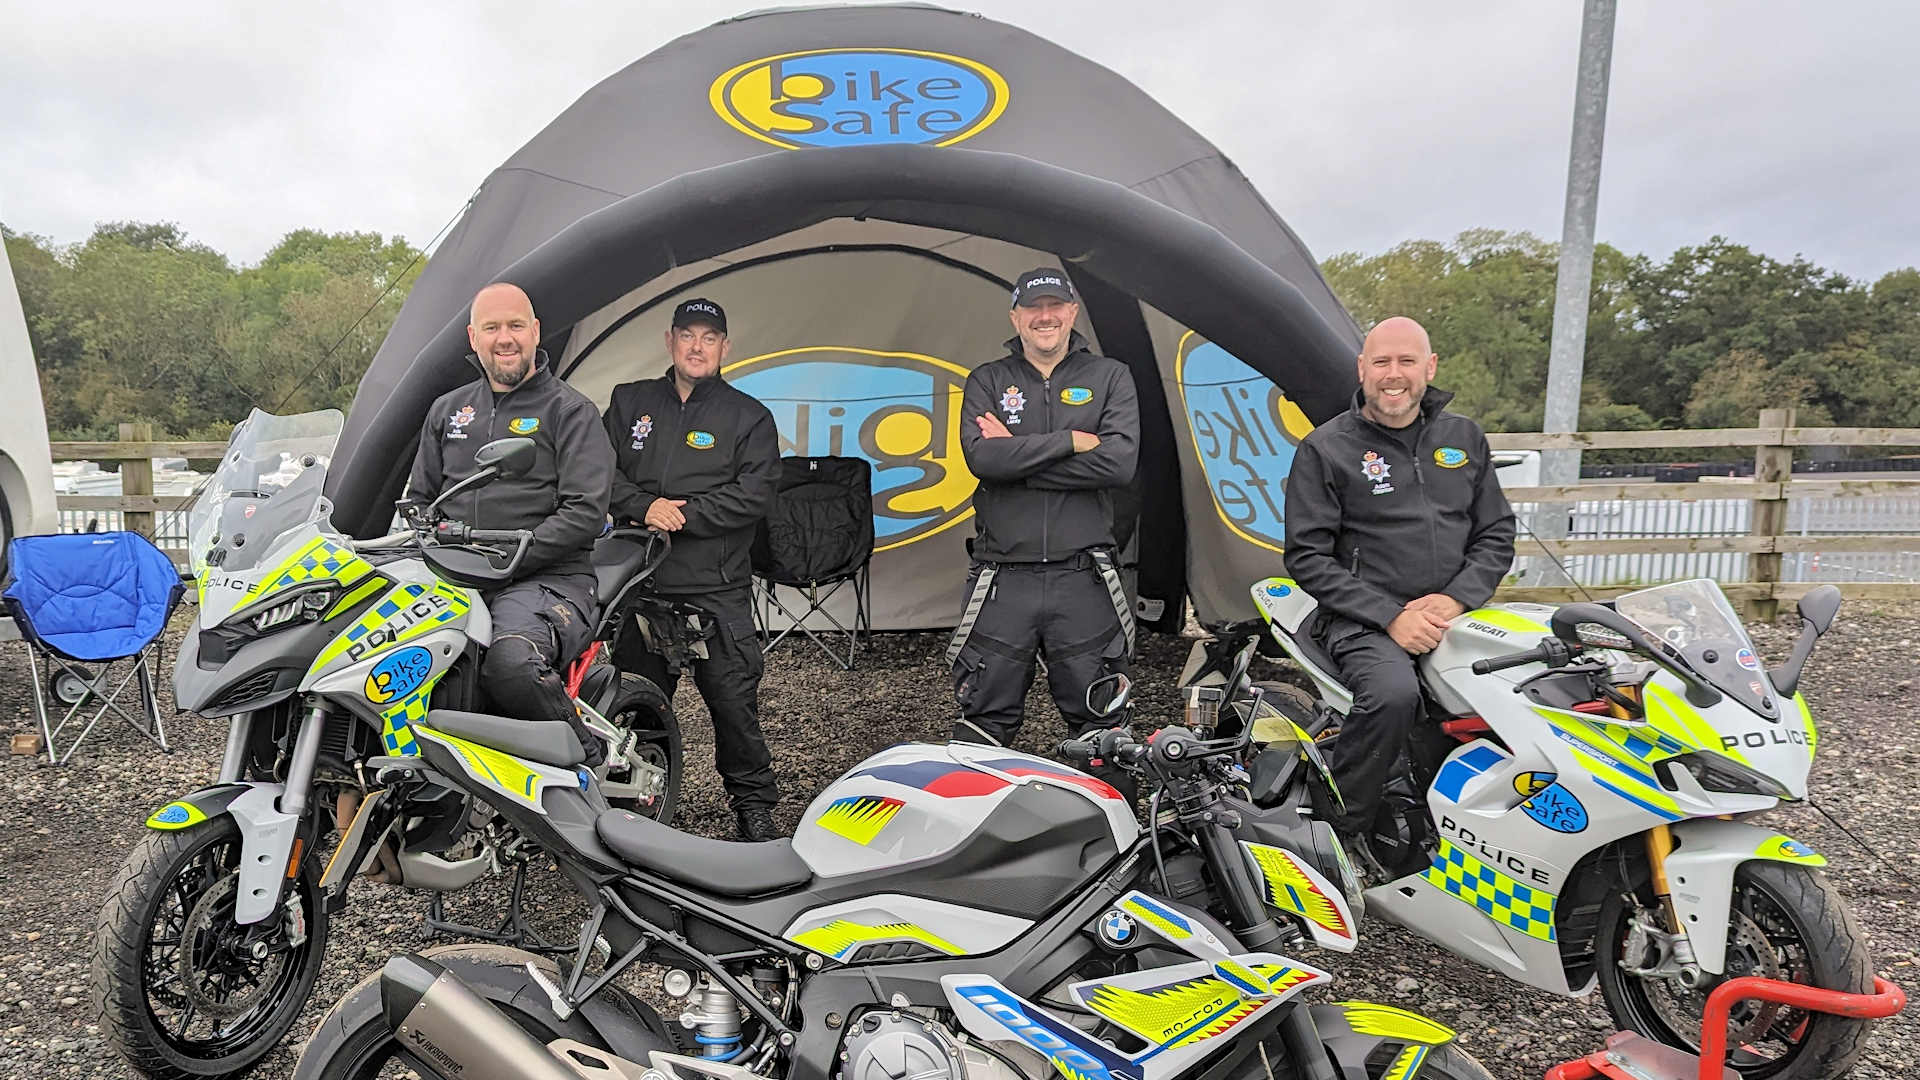 Derbyshire BikeSafe Team with show bikes